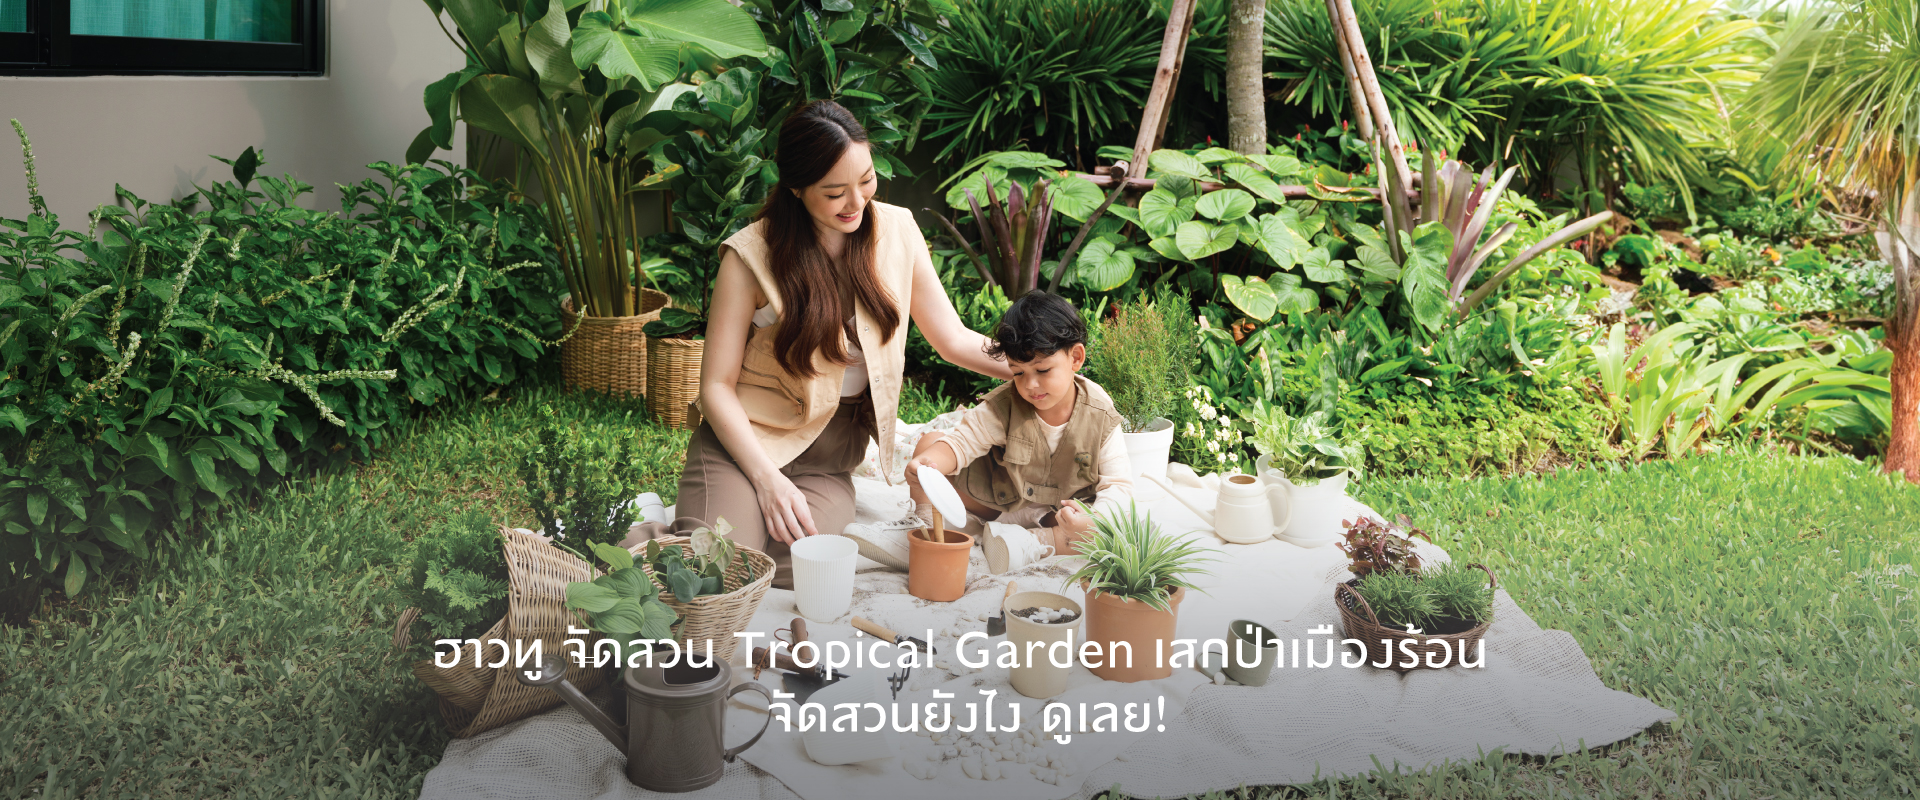 ฮาวทู จัดสวนข้างบ้าน Tropical Garden เสกป่าเมืองร้อน จัดสวนยังไง ดูเลย